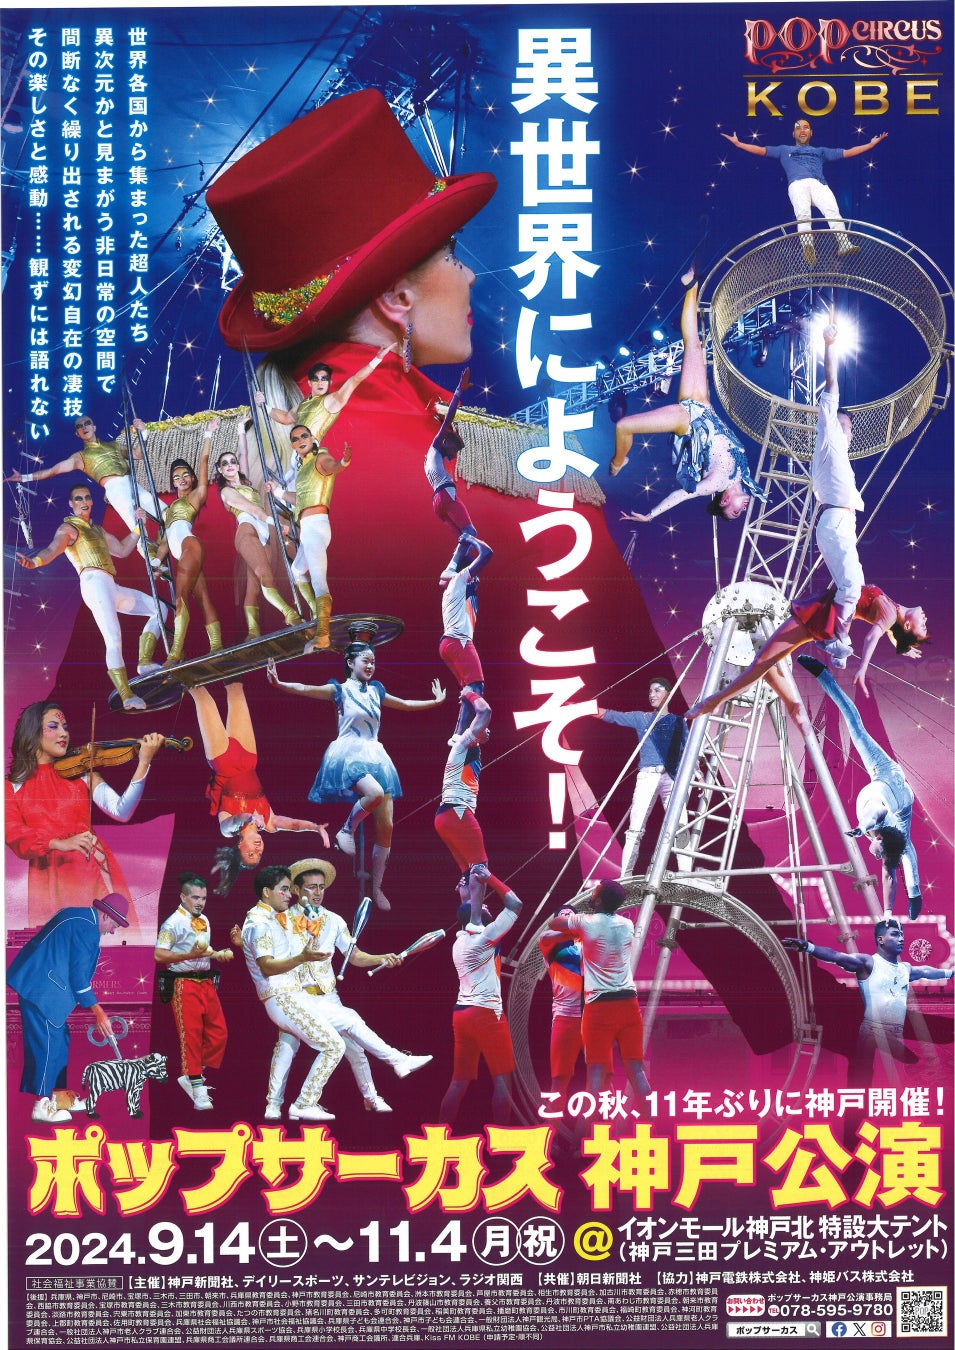 非日常空間へようこそ「ポップサーカス神戸公演」お得な前売りチケット好評発売中！！